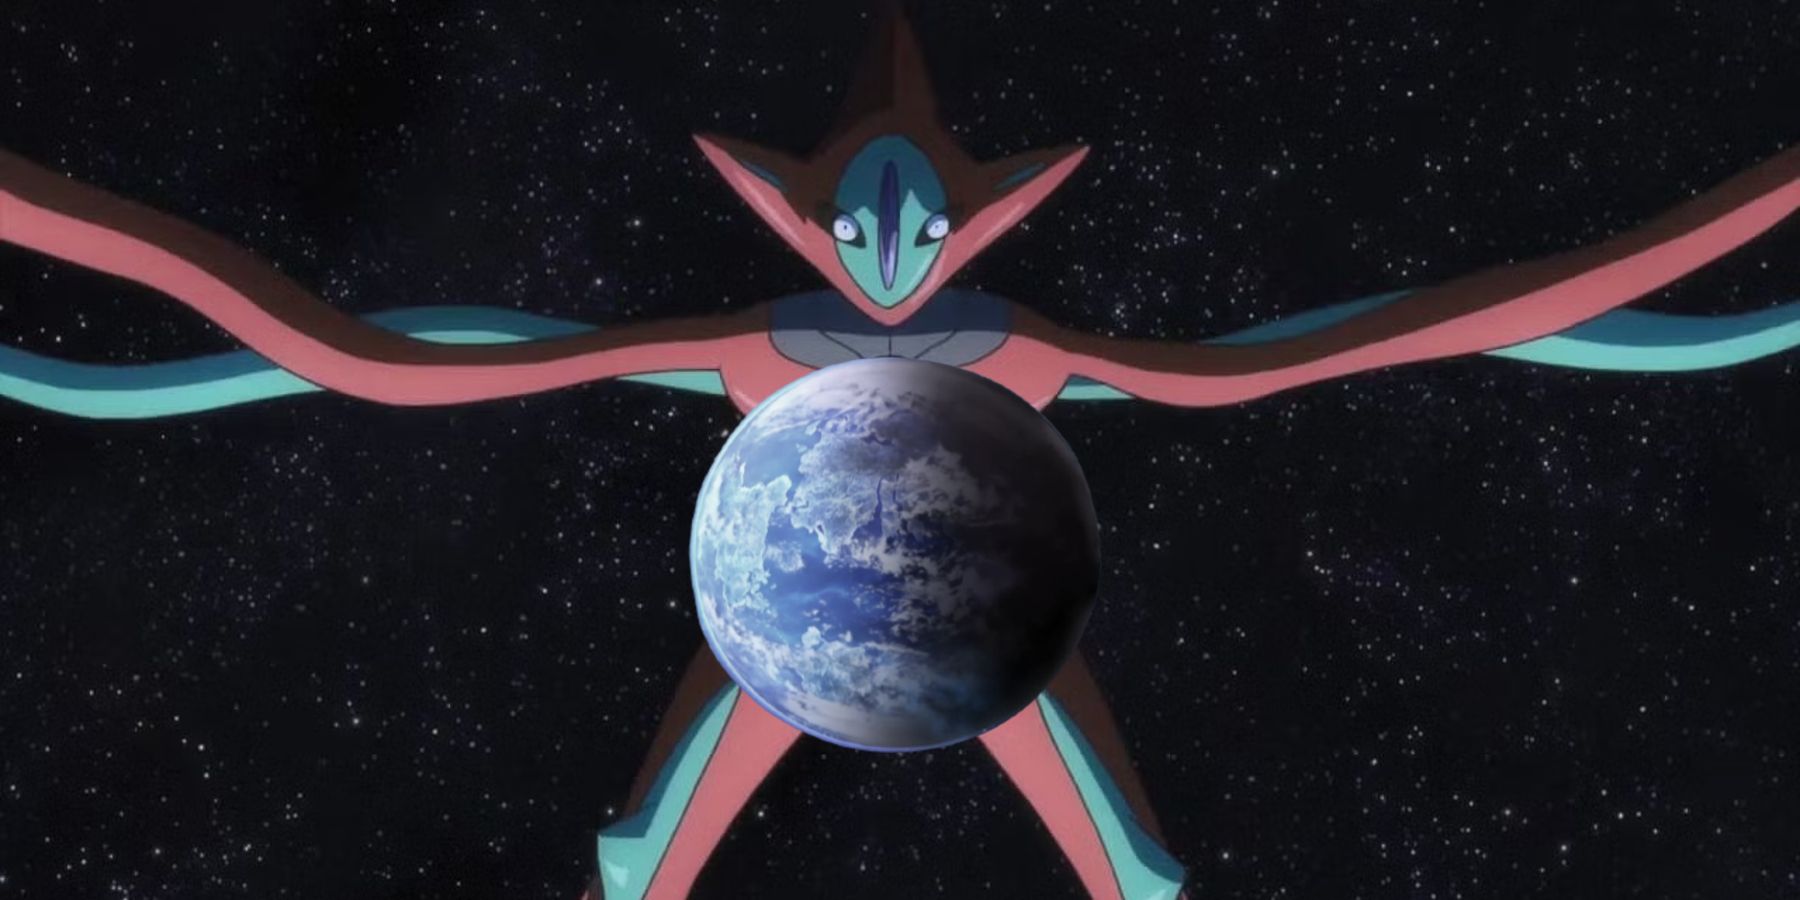 Um Deoxys gigante está pairando sobre a Terra no espaço sideral